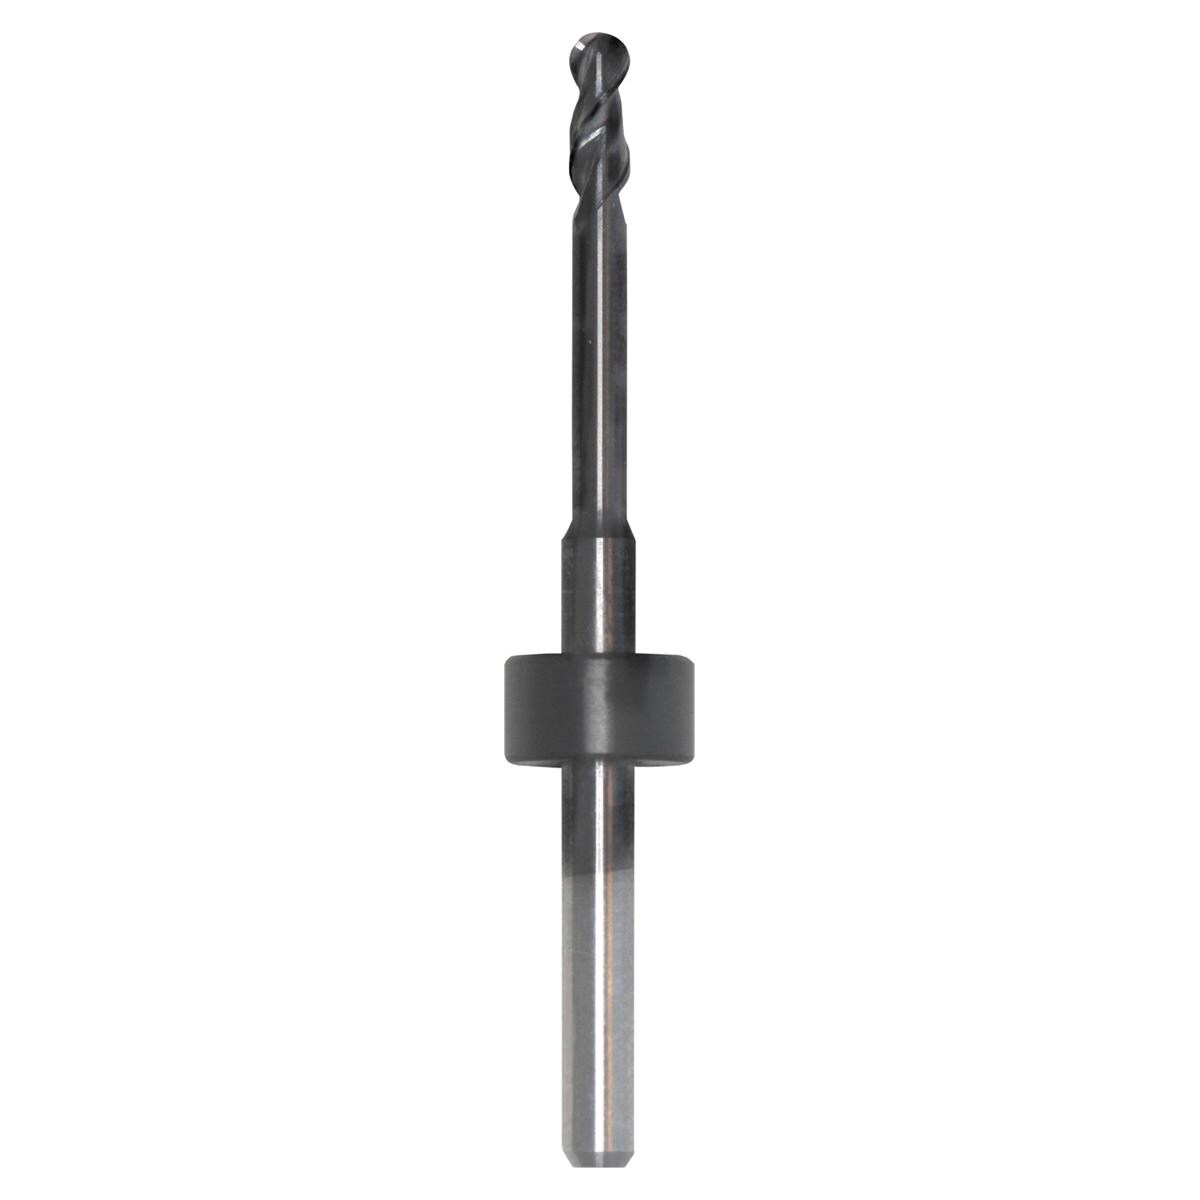 CAD/CAM-Fräser für Zirkon, Schaft Ø 3 mm - kompatibel mit Imes Icore - Figur XSC I3025R, Ø 2,5 mm, 2-schichtig